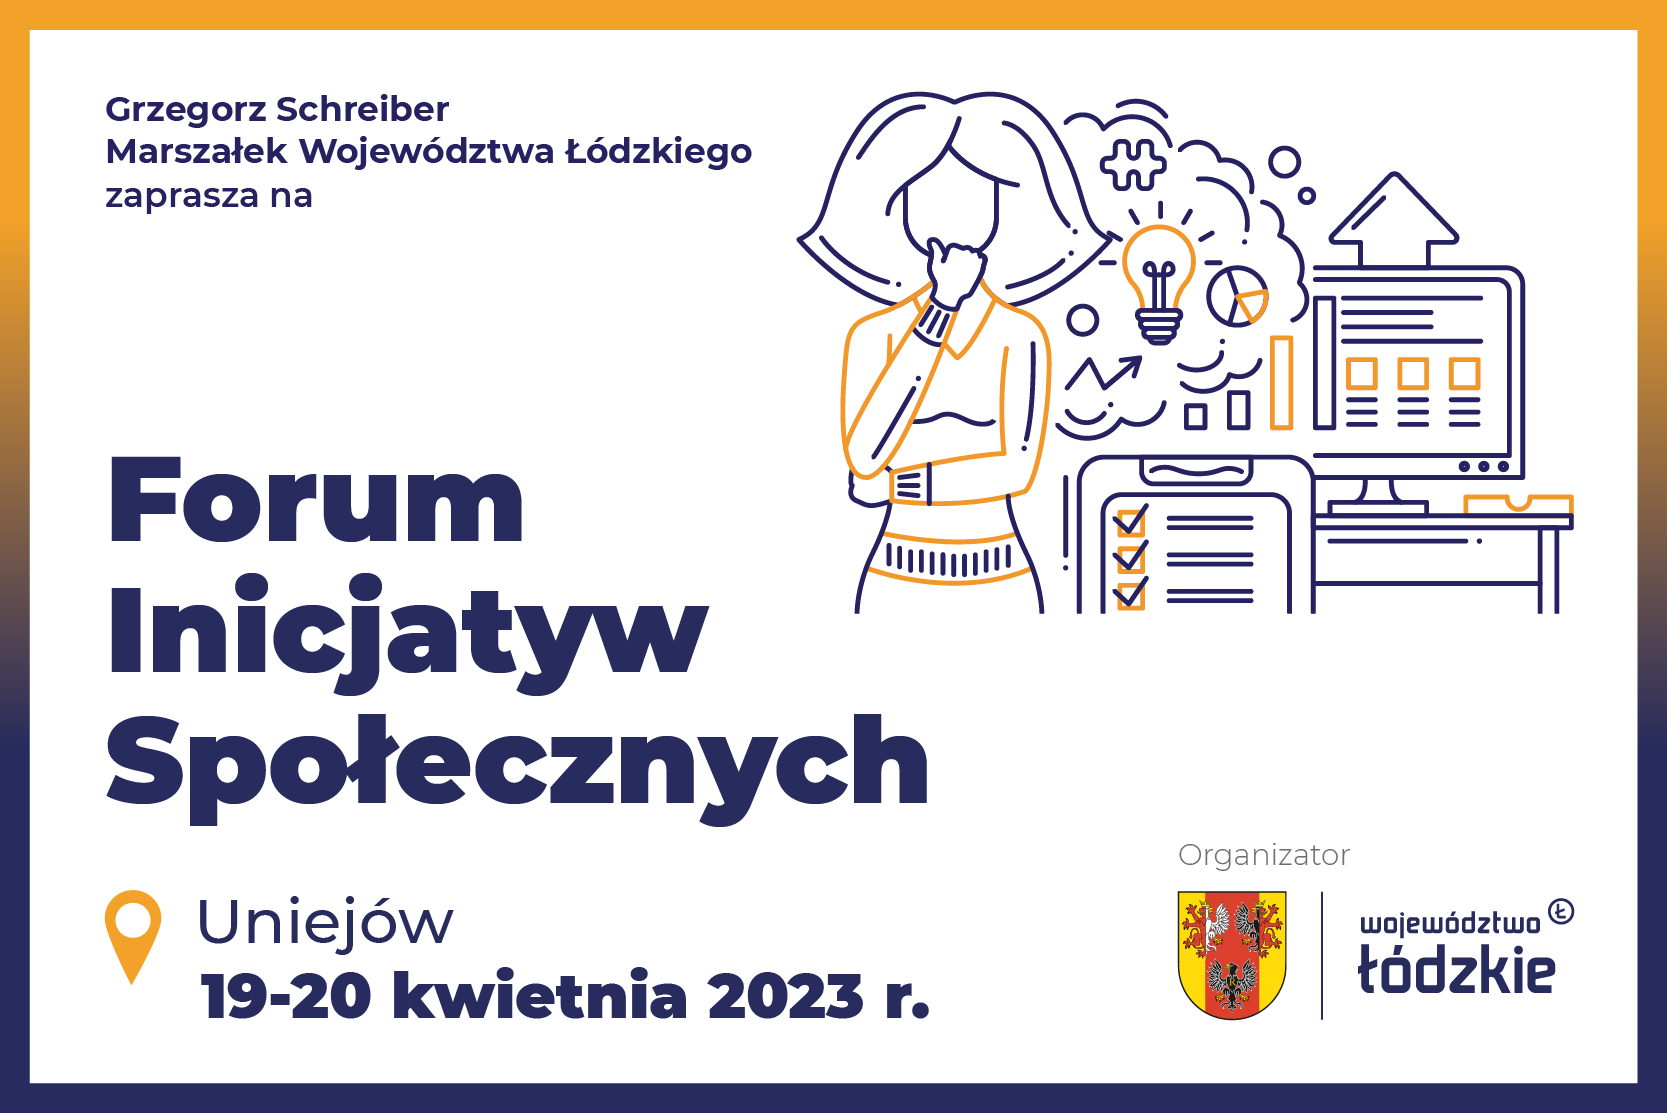 Grzegorz Schreiber marszałek województwa łódzkiego zaprasza na Forum Inicjatyw Społecznych 19,20 kwietnia 2023 roku w Uniejowie